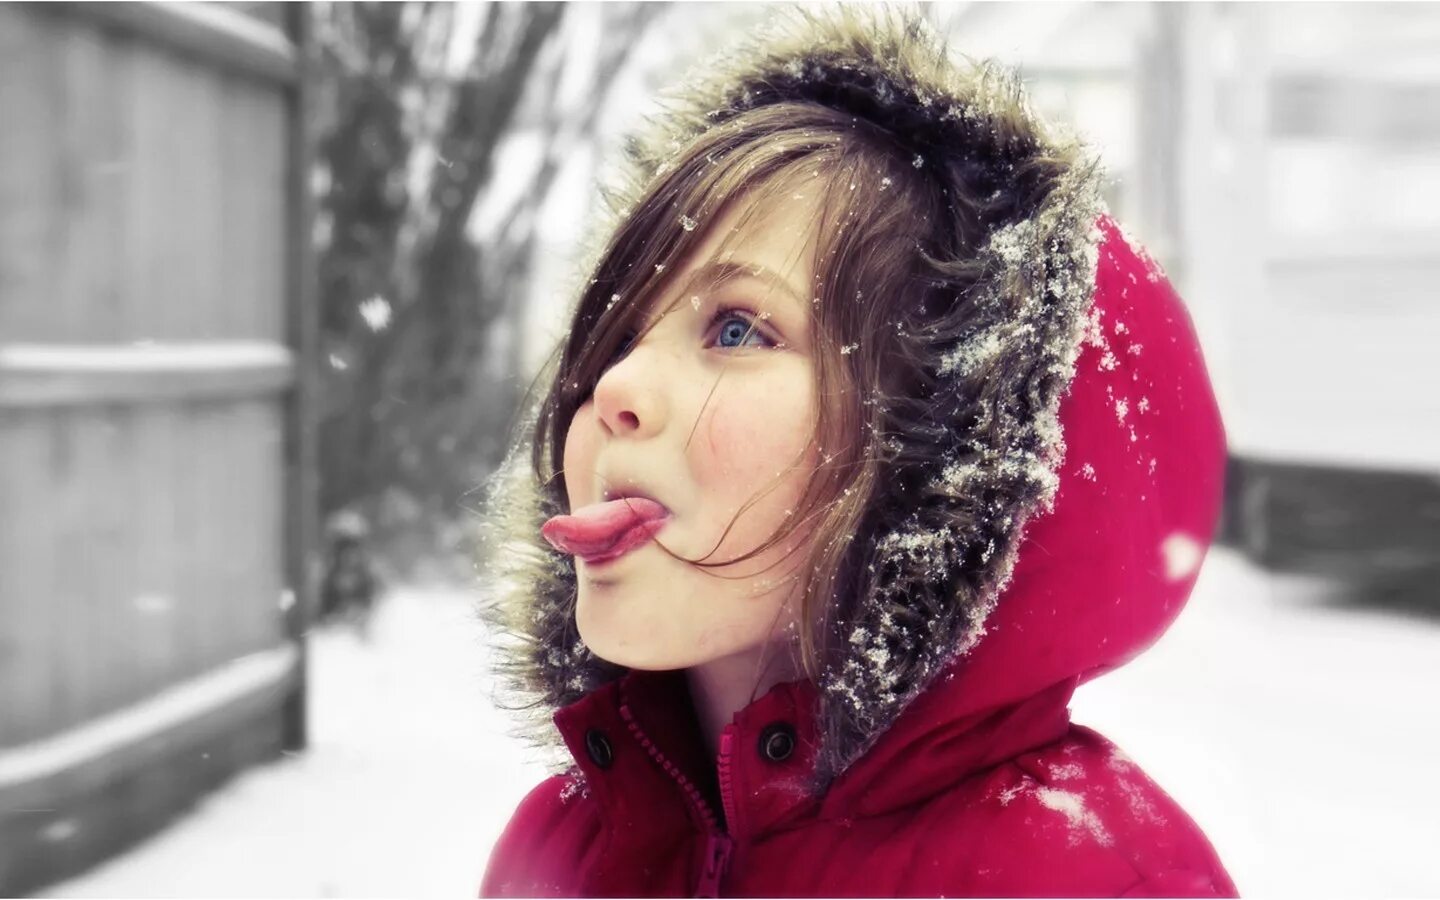 Ловить ртом воздух. Ловить снежинки ртом. Зимняя хандра. Веселая девушка зимой. Девушка ловит снежинки.